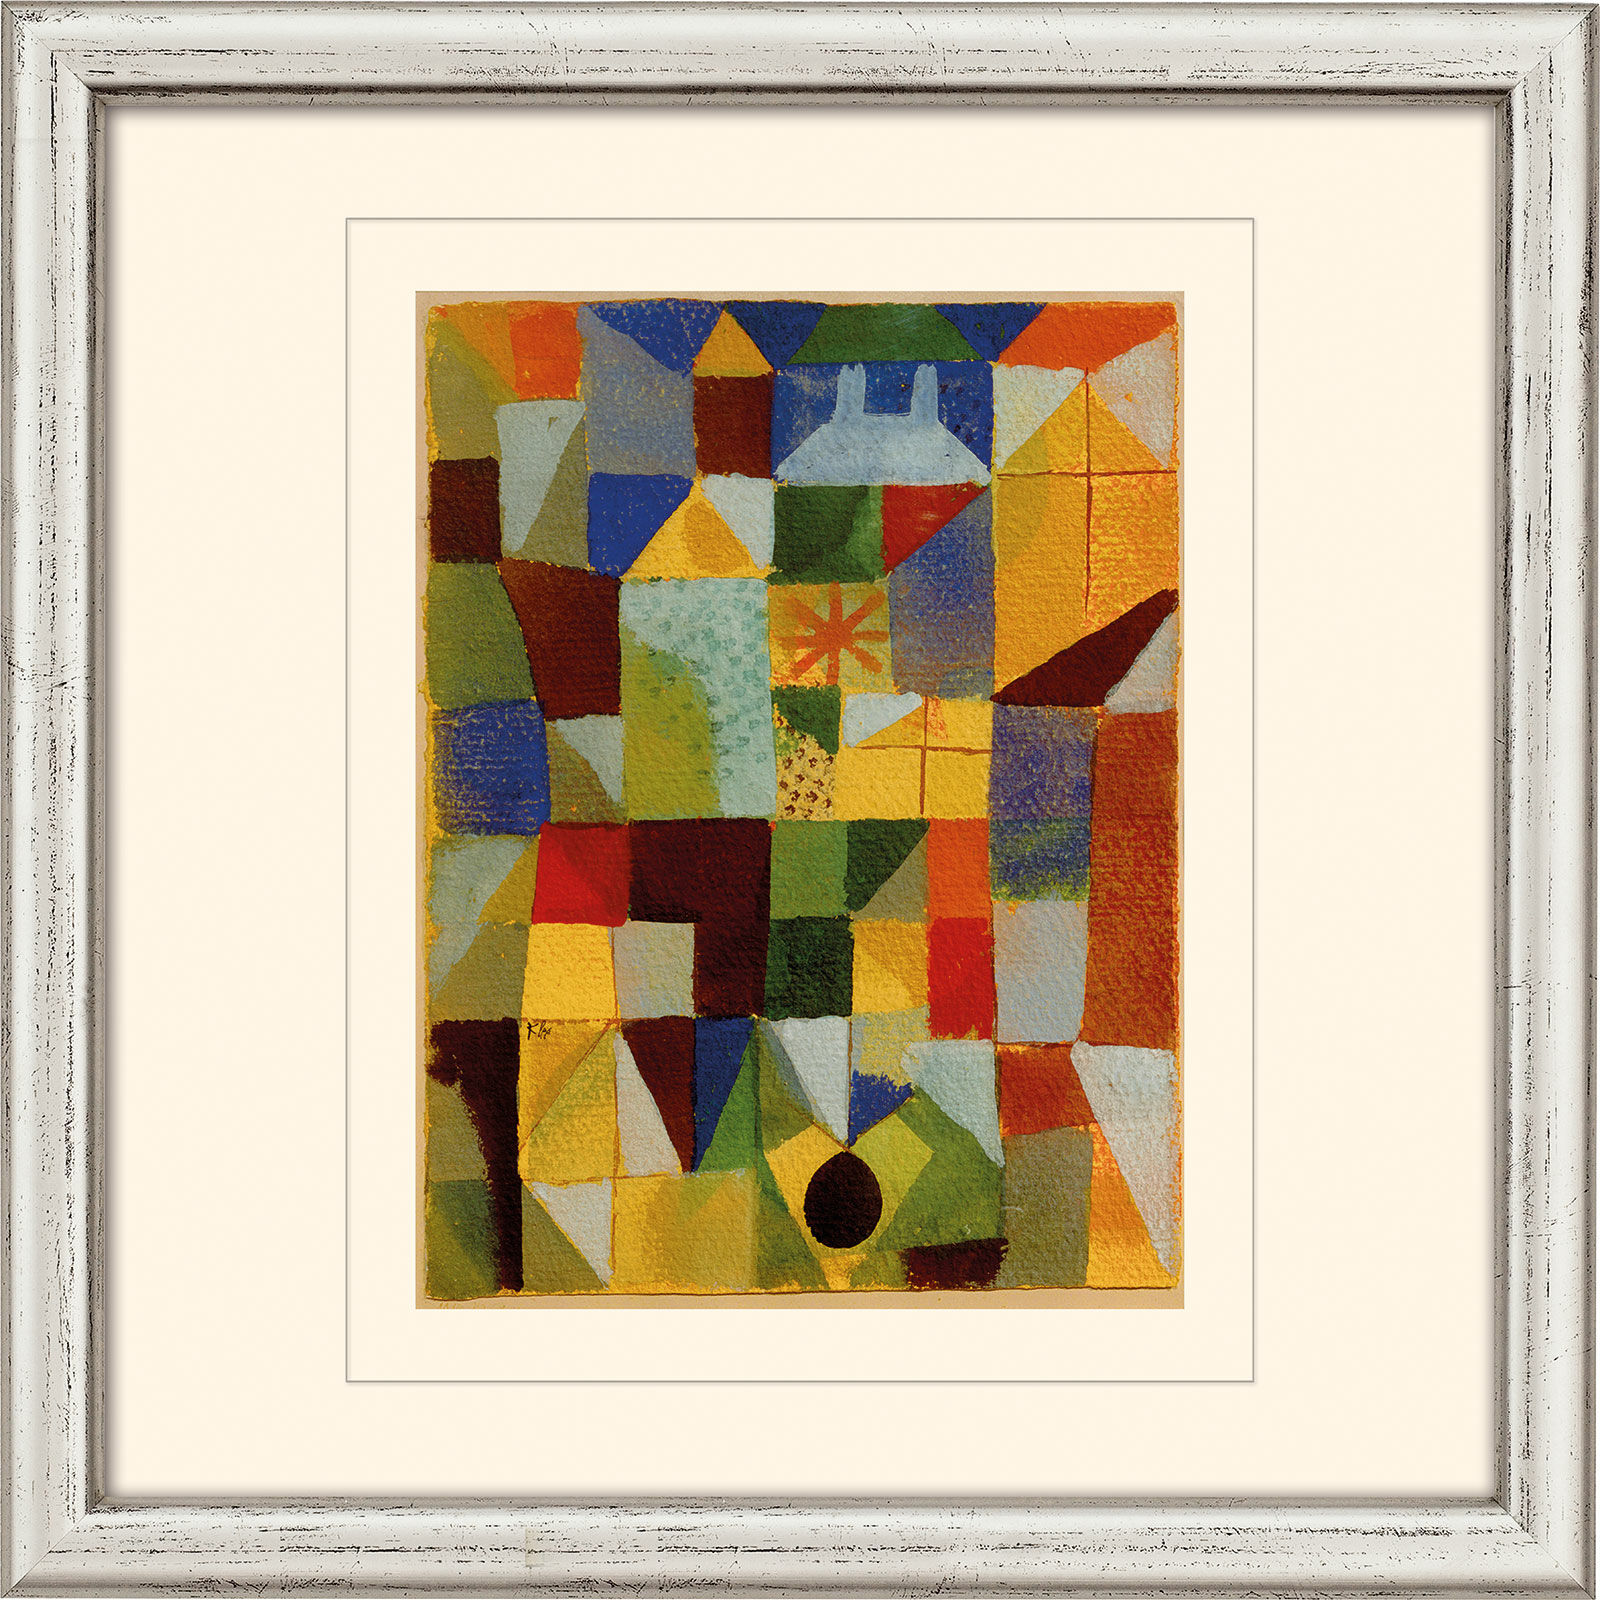 Bild "Stadskomposition m. gula fönster" (1919), inramad von Paul Klee